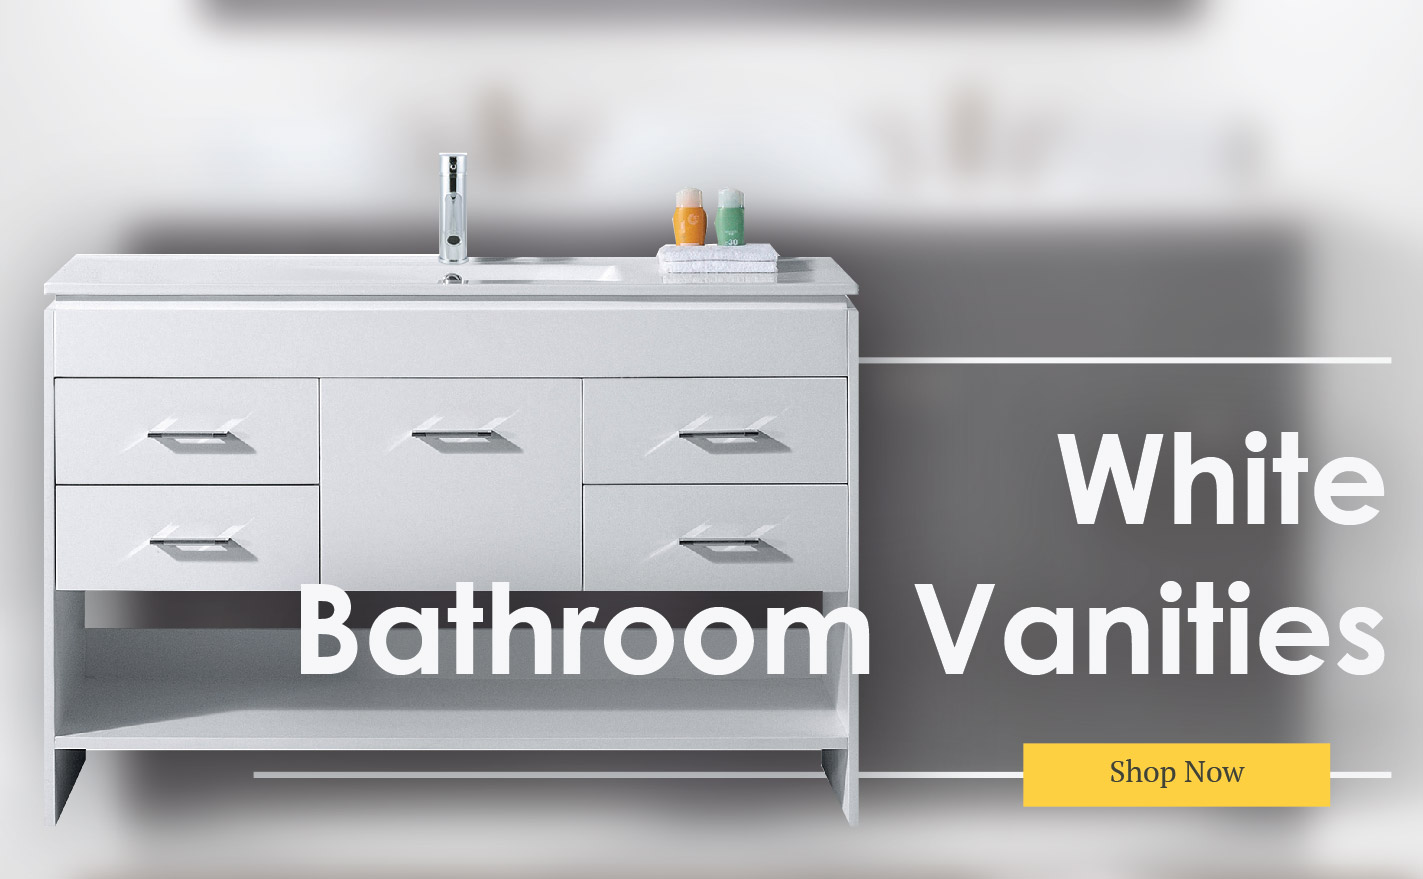 For Bathroom Vanities And, Bathroom Vanity Retailers